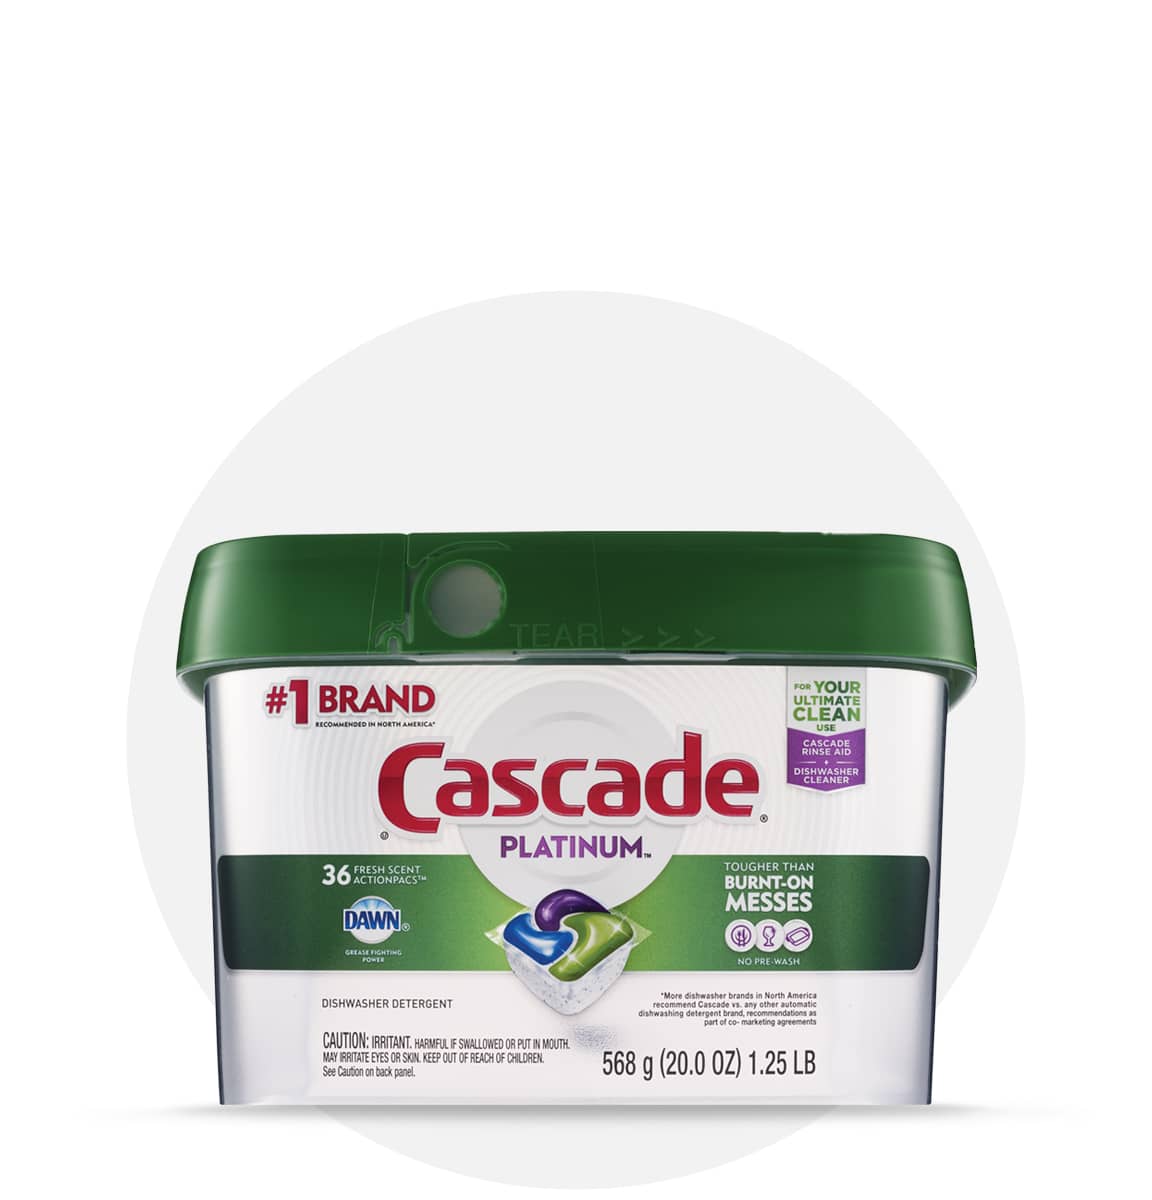 Shop now for Cascade® Platinum ActionPacs™ detergent